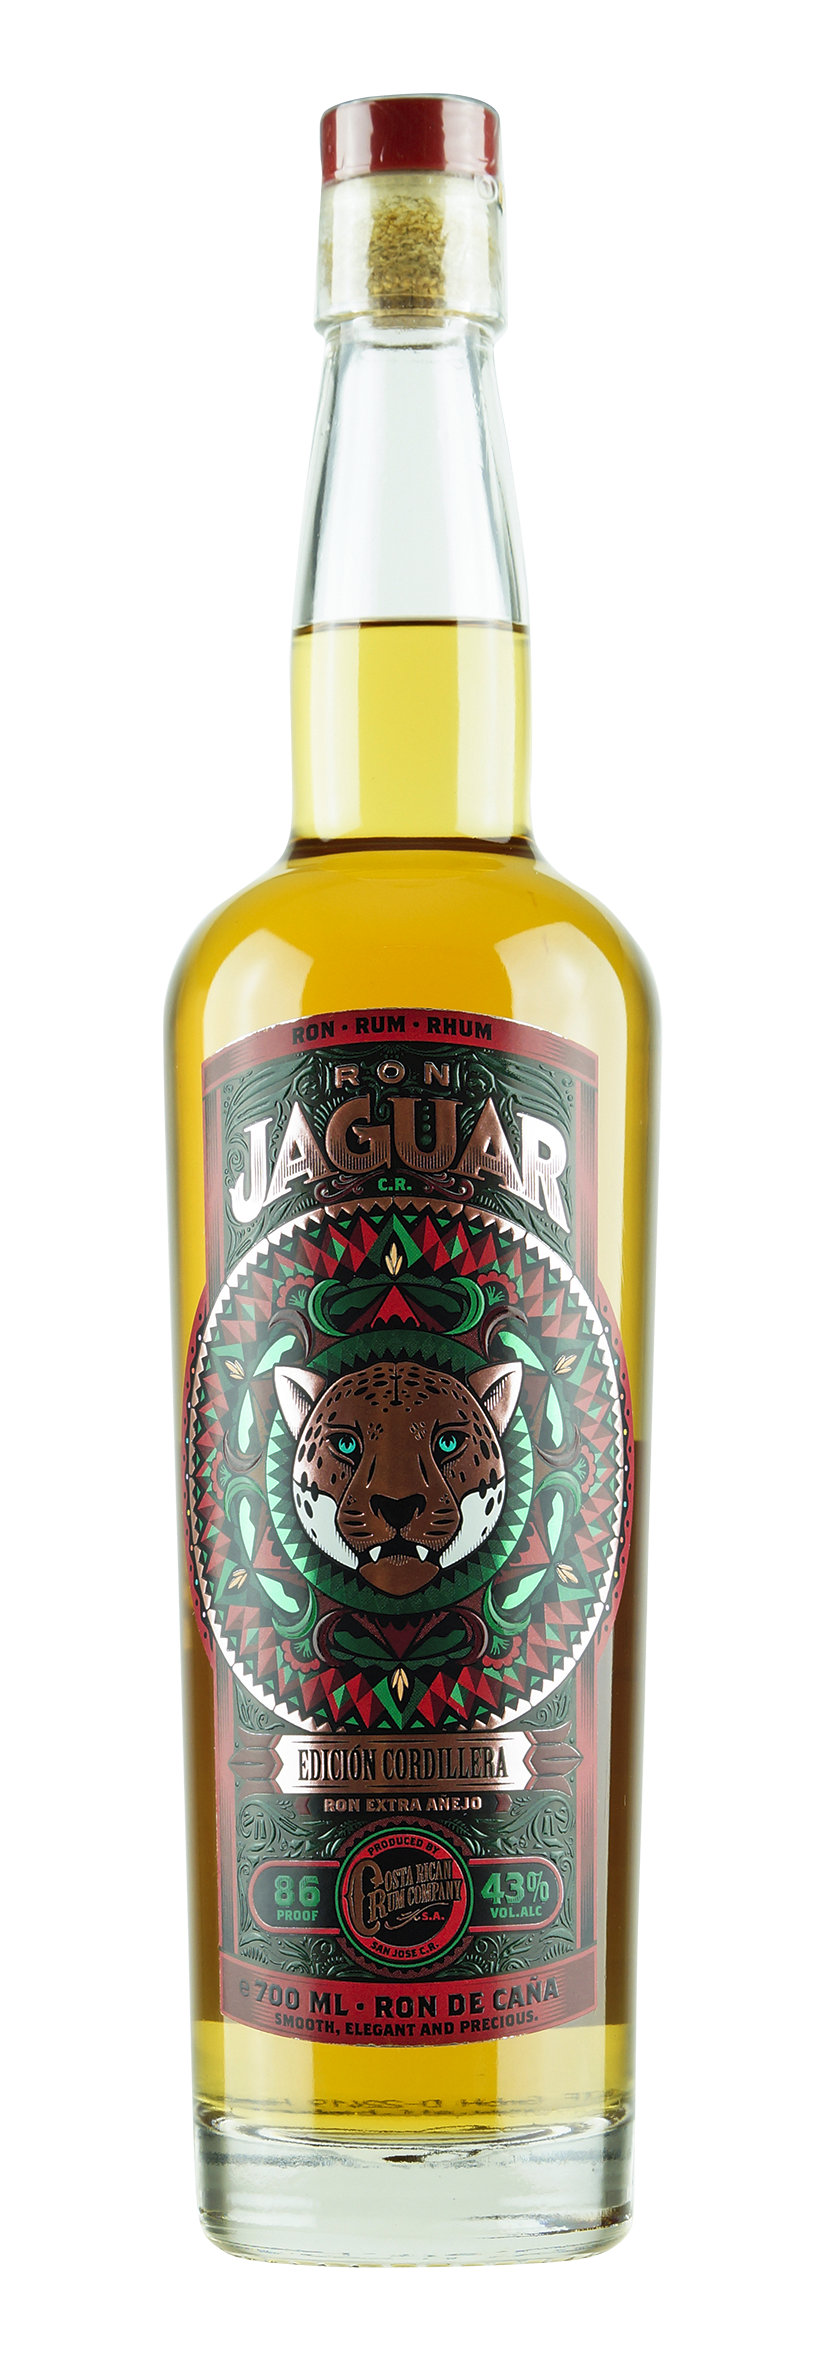 Jaguar Rum Edicion Cordillera 0